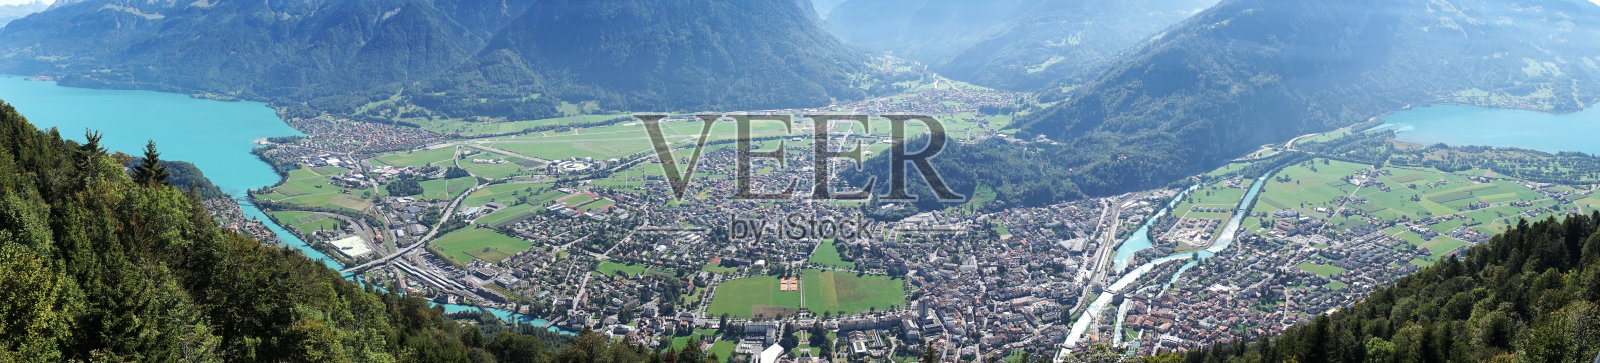 瑞士因特拉肯小镇全景照片摄影图片